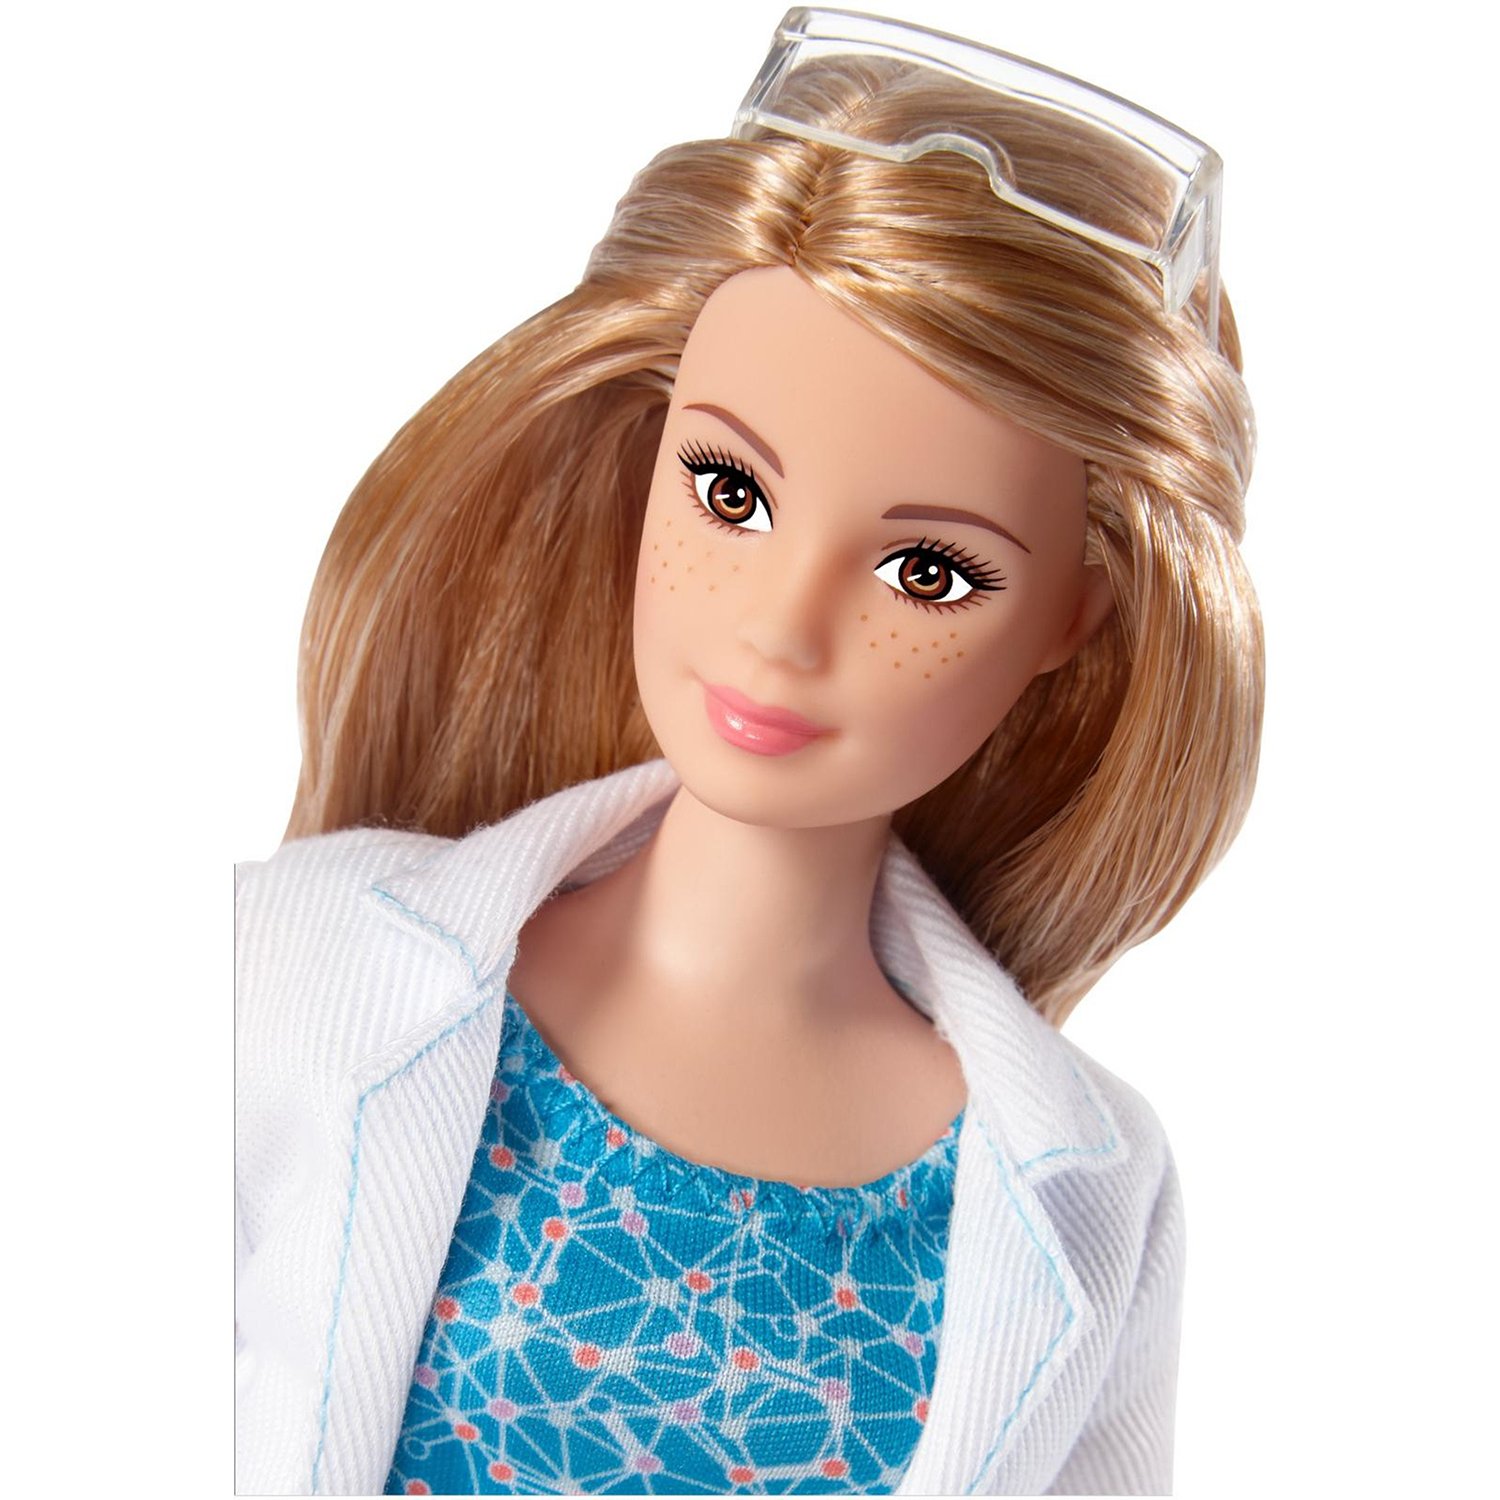 Кукла Barbie Кем быть? Ученый с микроскопом, 31 см, DVF60